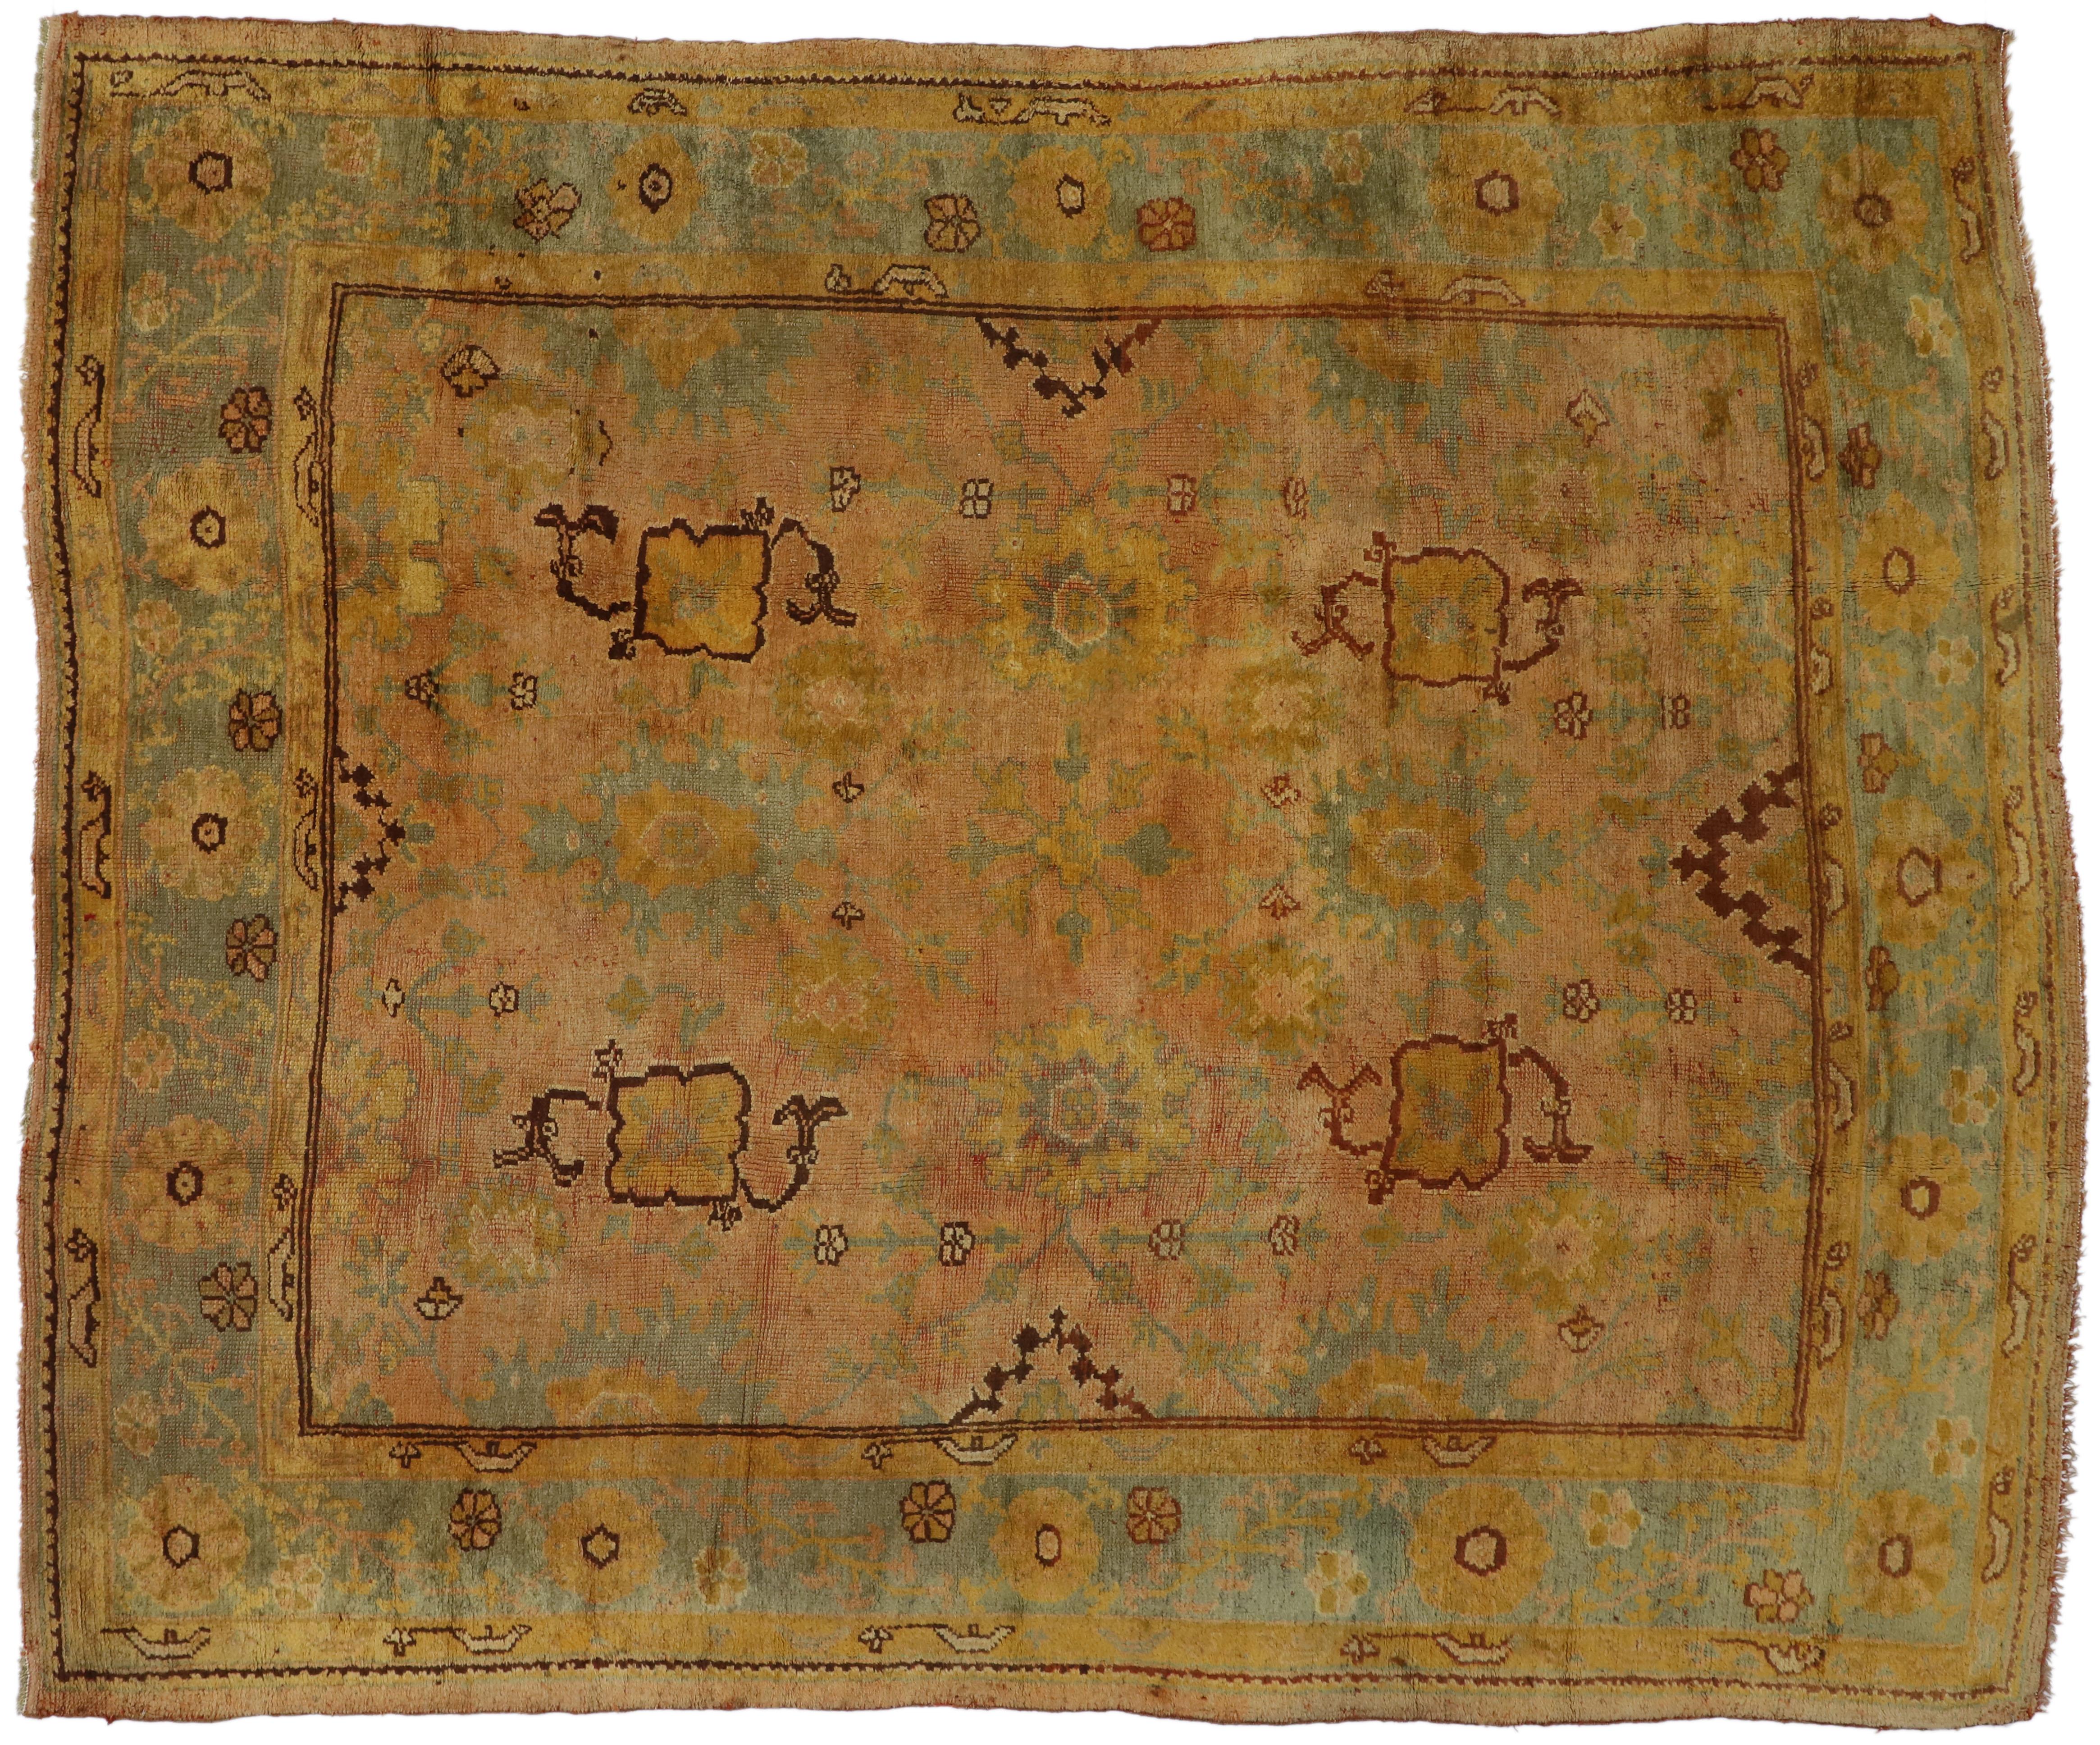 73987 Antique tapis turc Oushak de style provincial français et Louis XIV. Ce tapis Oushak turc ancien, en laine nouée à la main, présente un motif géométrique général composé de motifs de style Harshang, de palmettes fleuries, de vrilles feuillues,